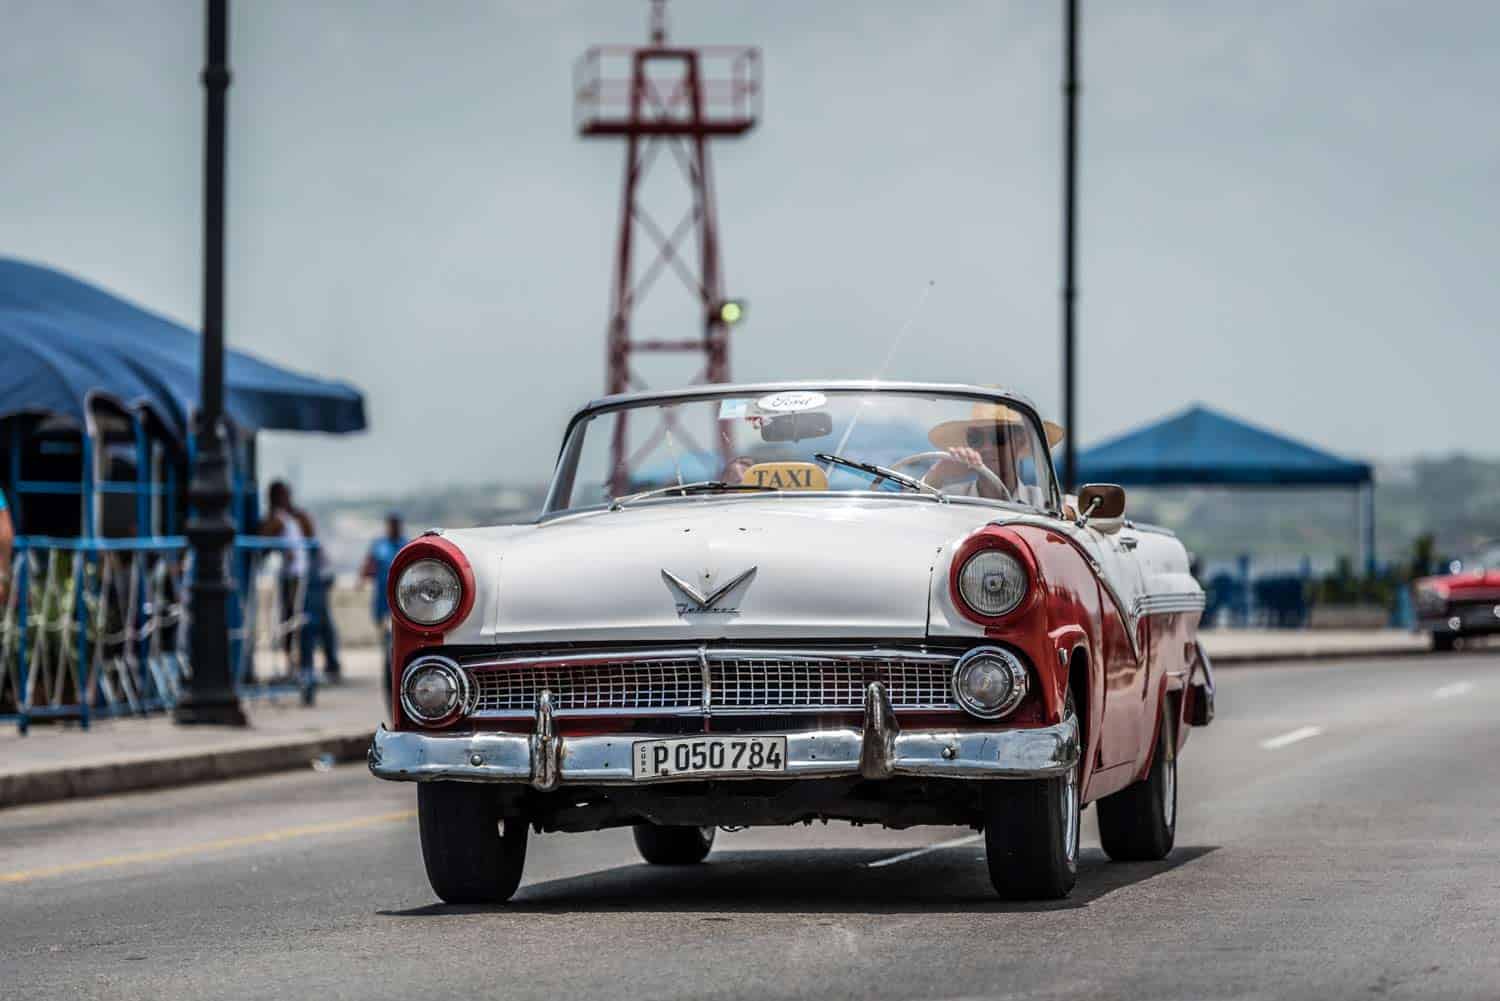 Vencimiento de Licencia de Conducción y Circulación en Cuba